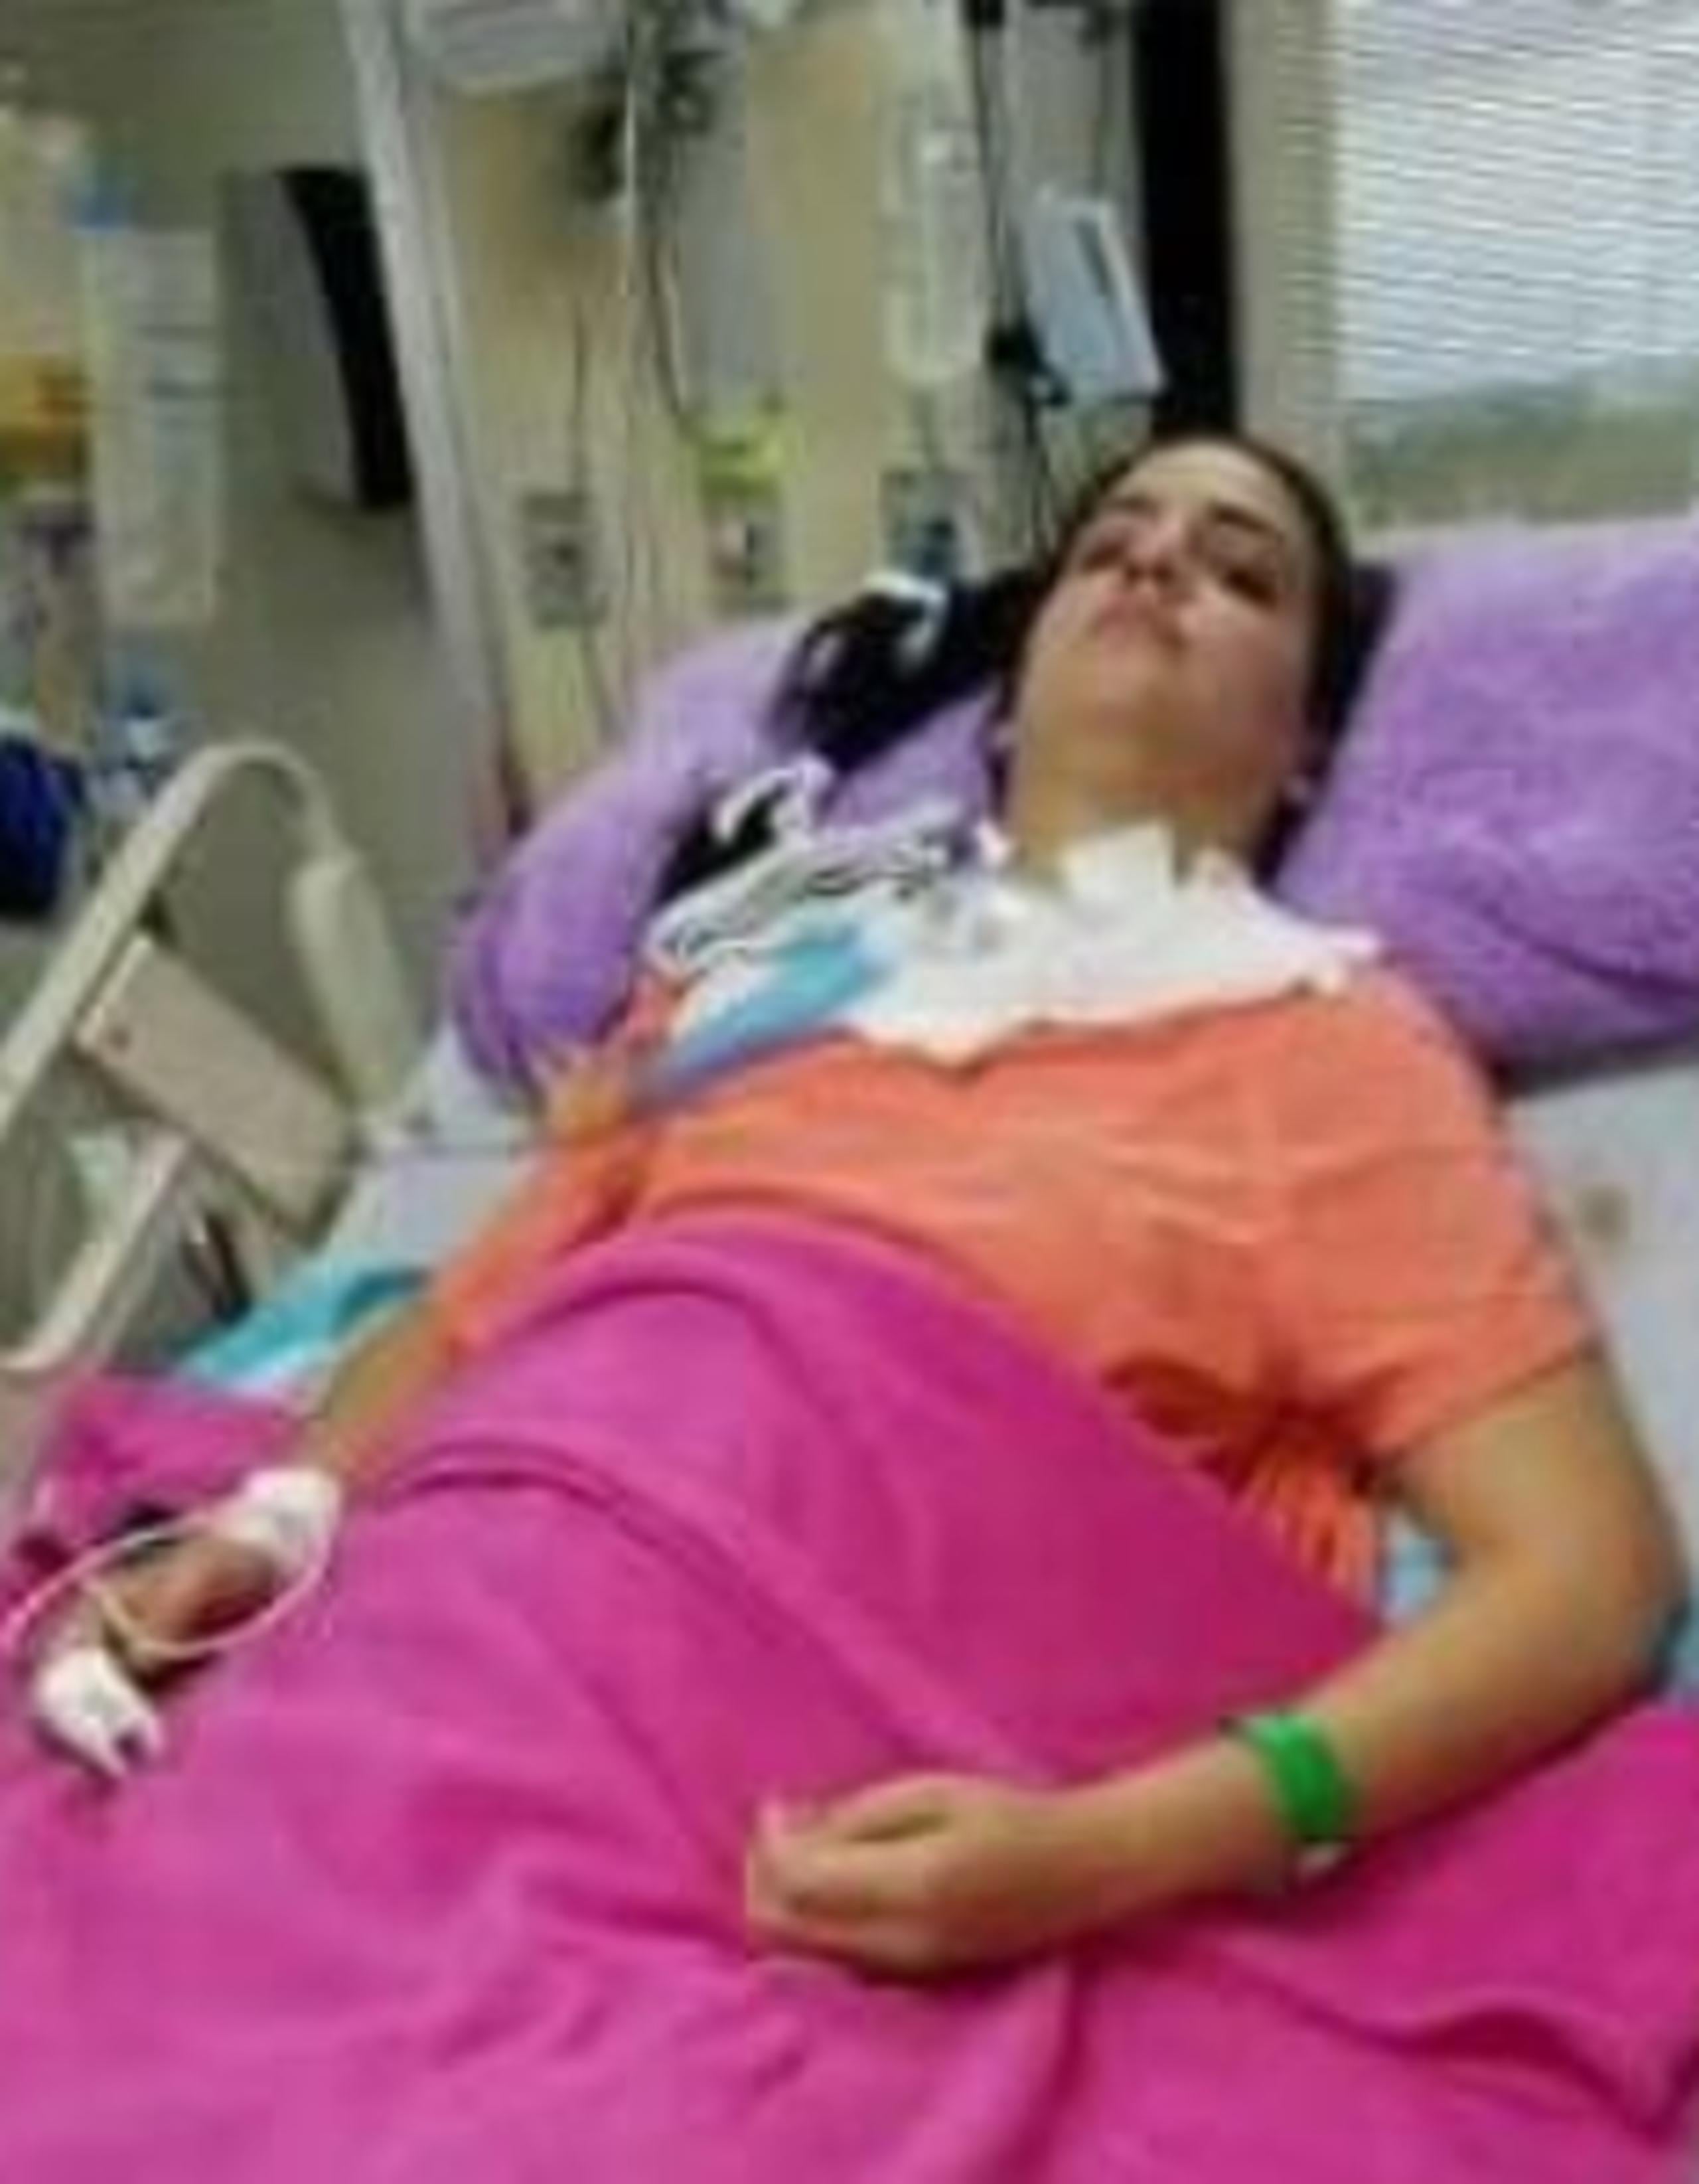 Tras la agresión, la joven de 27 años tuvo que ser operada de sus vértebras, sufrió el colapso de un pulmón, por lo que fue entubada. También se le hizo una traqueotomía y una gastrostomía. (Suministrada)